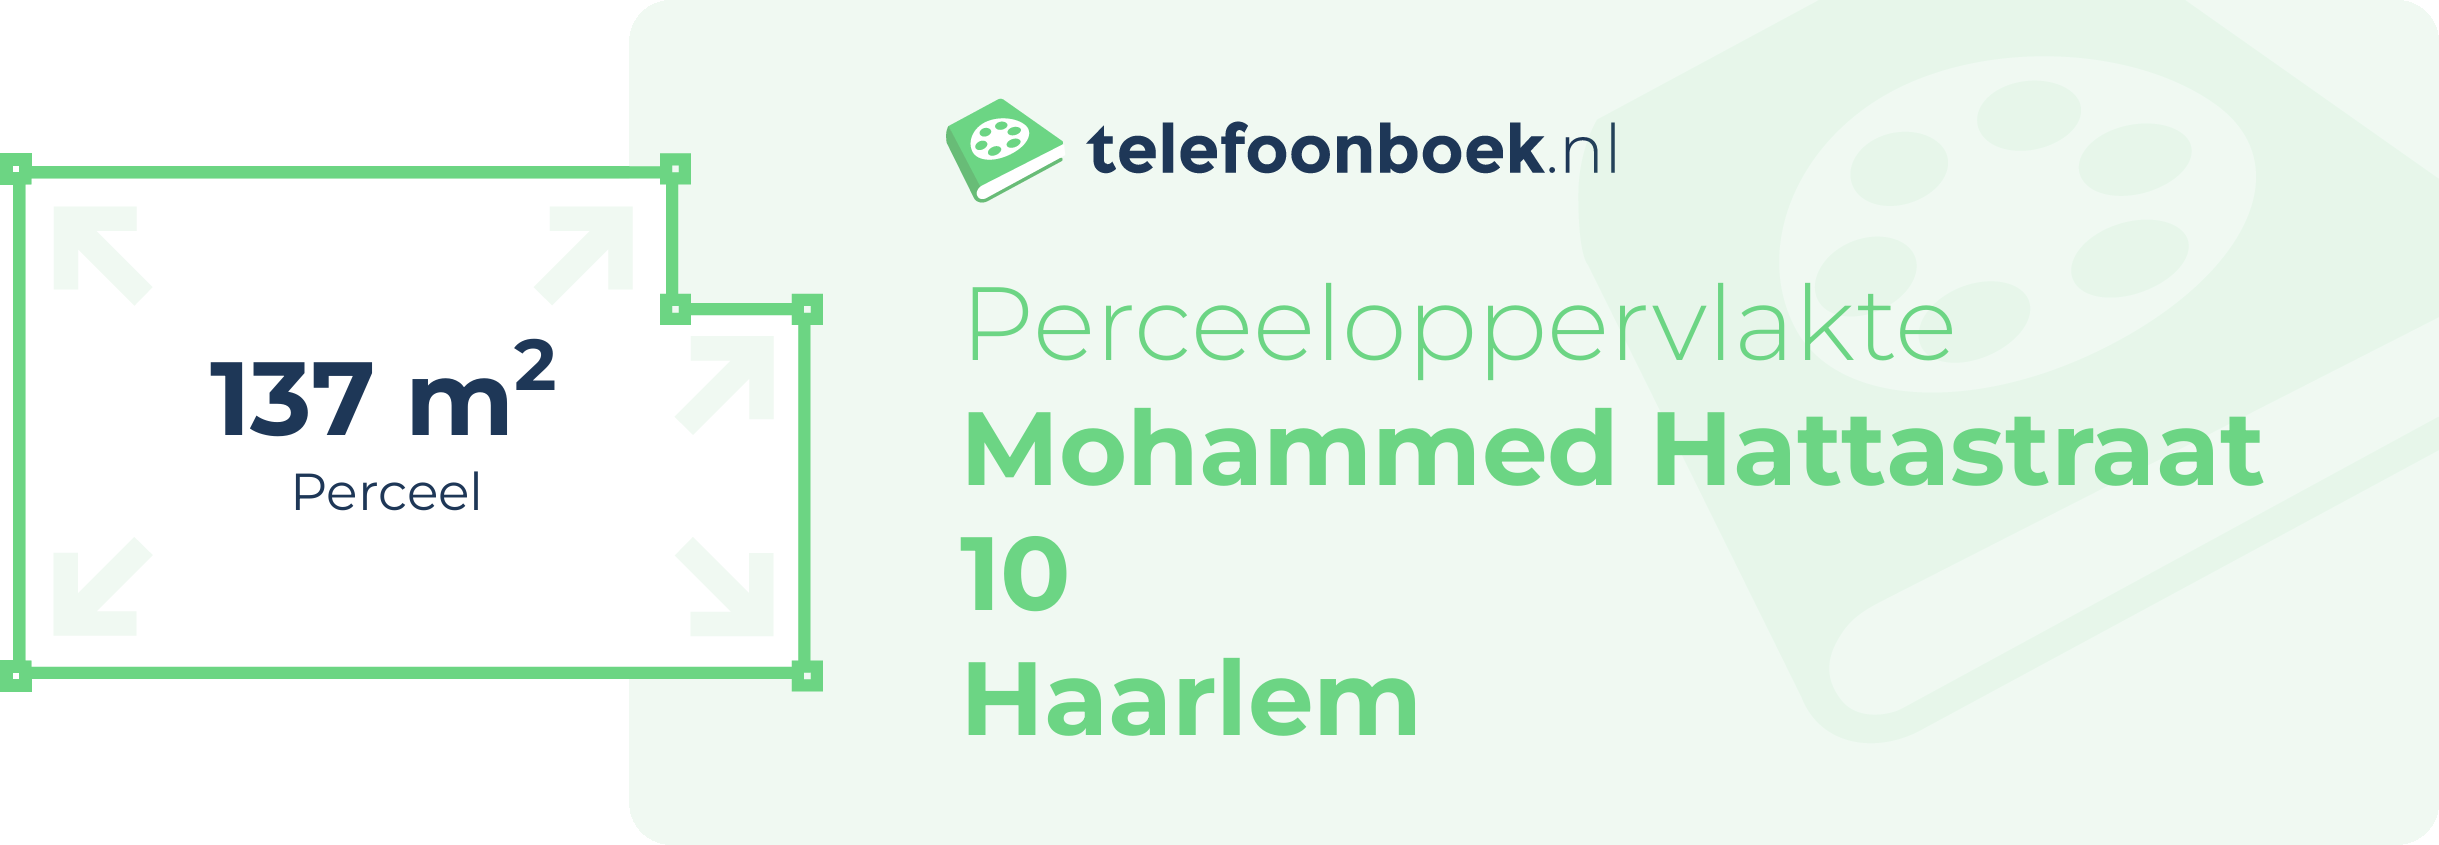 Perceeloppervlakte Mohammed Hattastraat 10 Haarlem